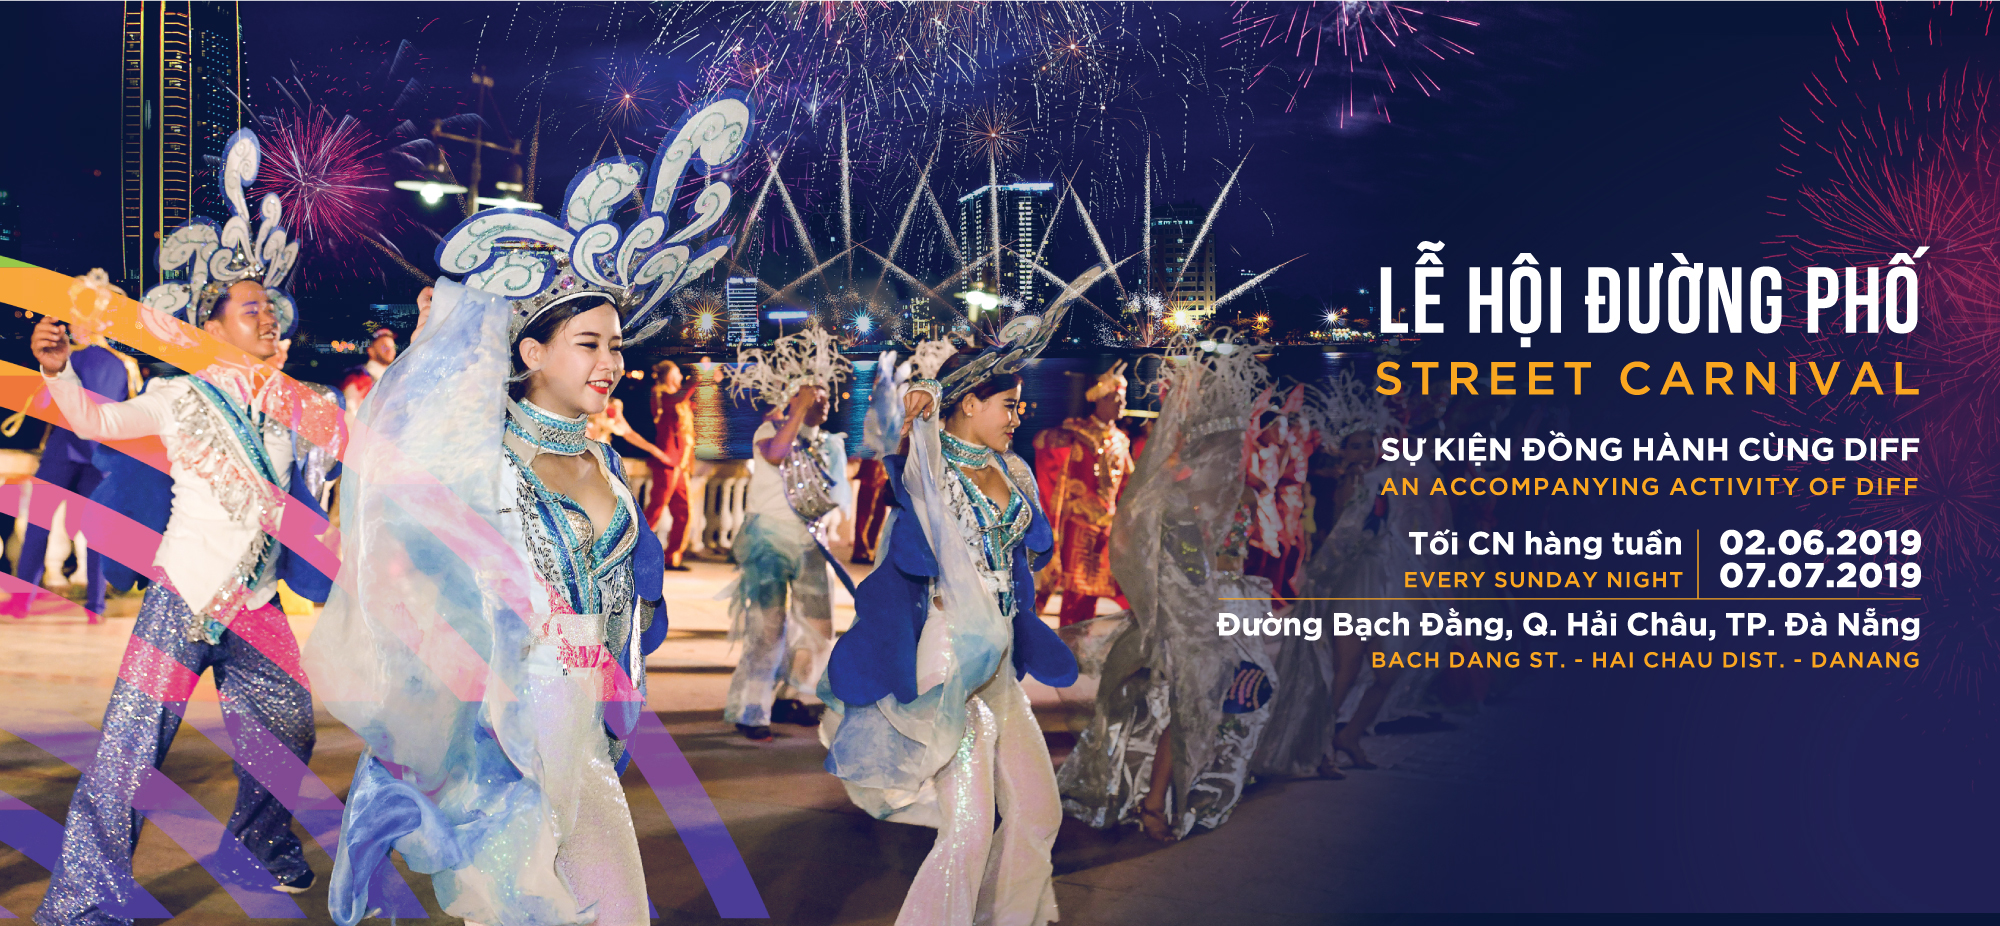 carnival duong pho diff 2019 tiep tuc khuay dong khong gian pho dem da nang